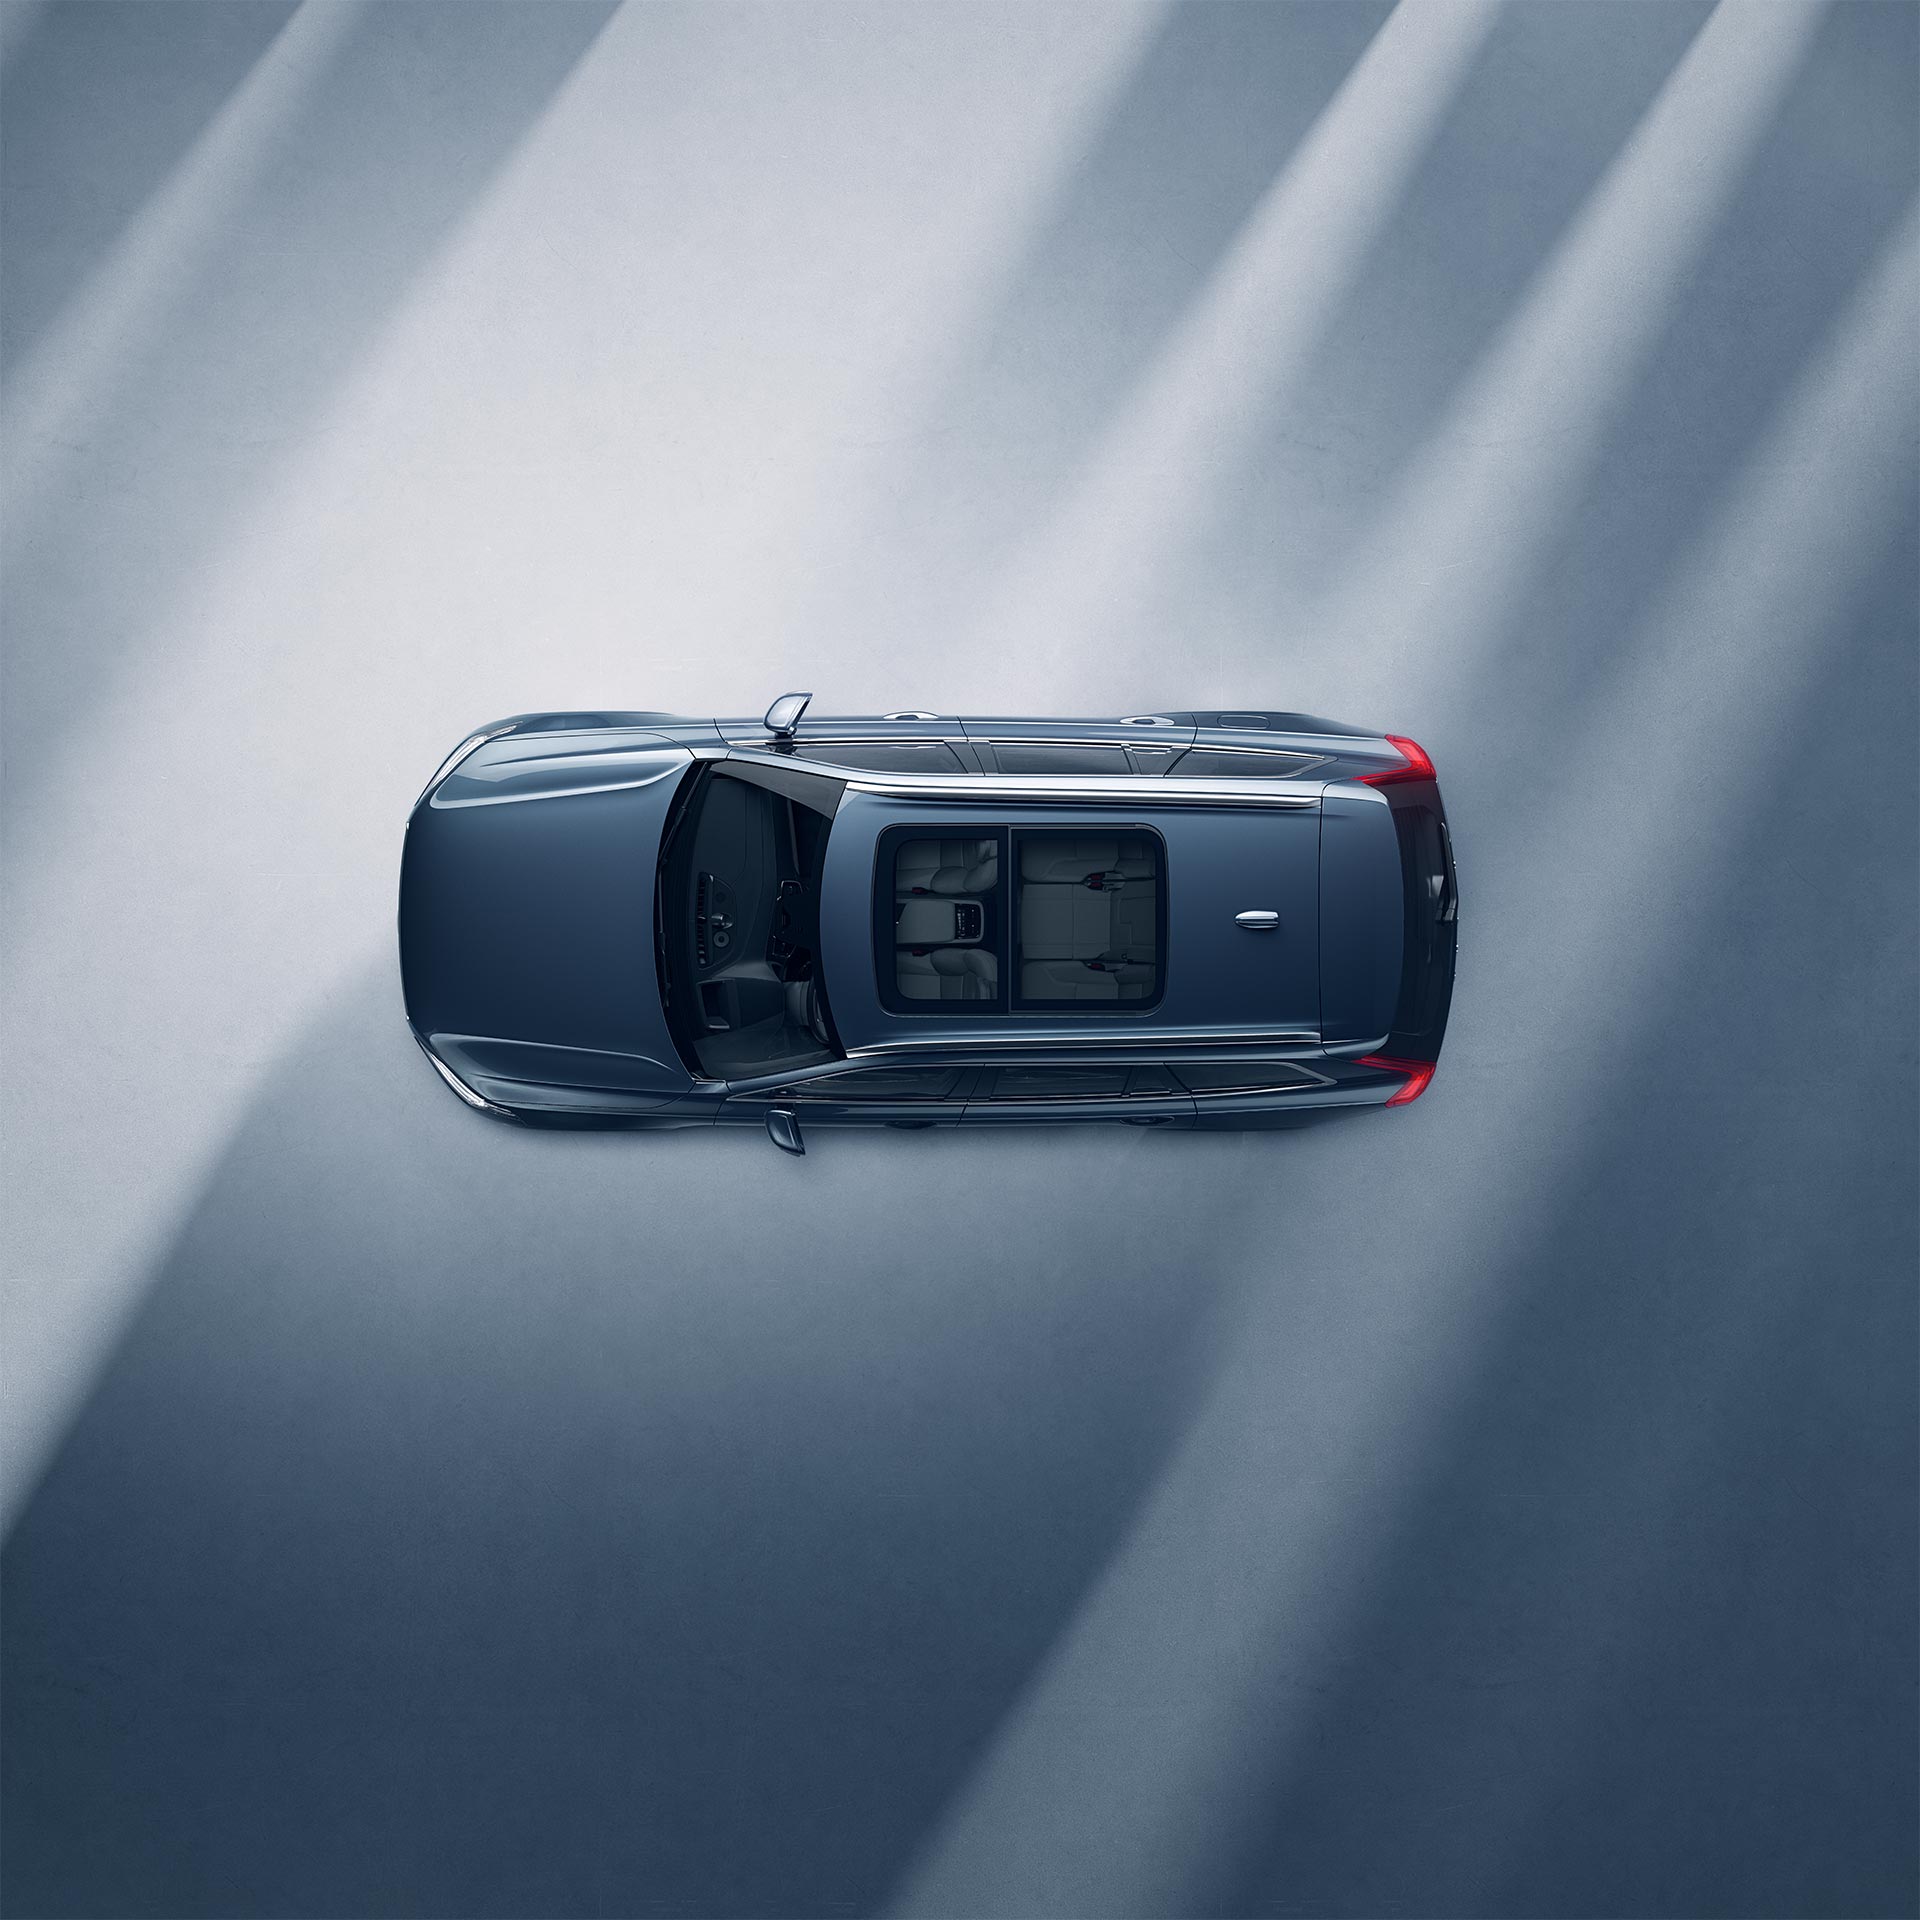 Prikaz panoramskog krova odozgo na blagom hibridu Volvo XC90.